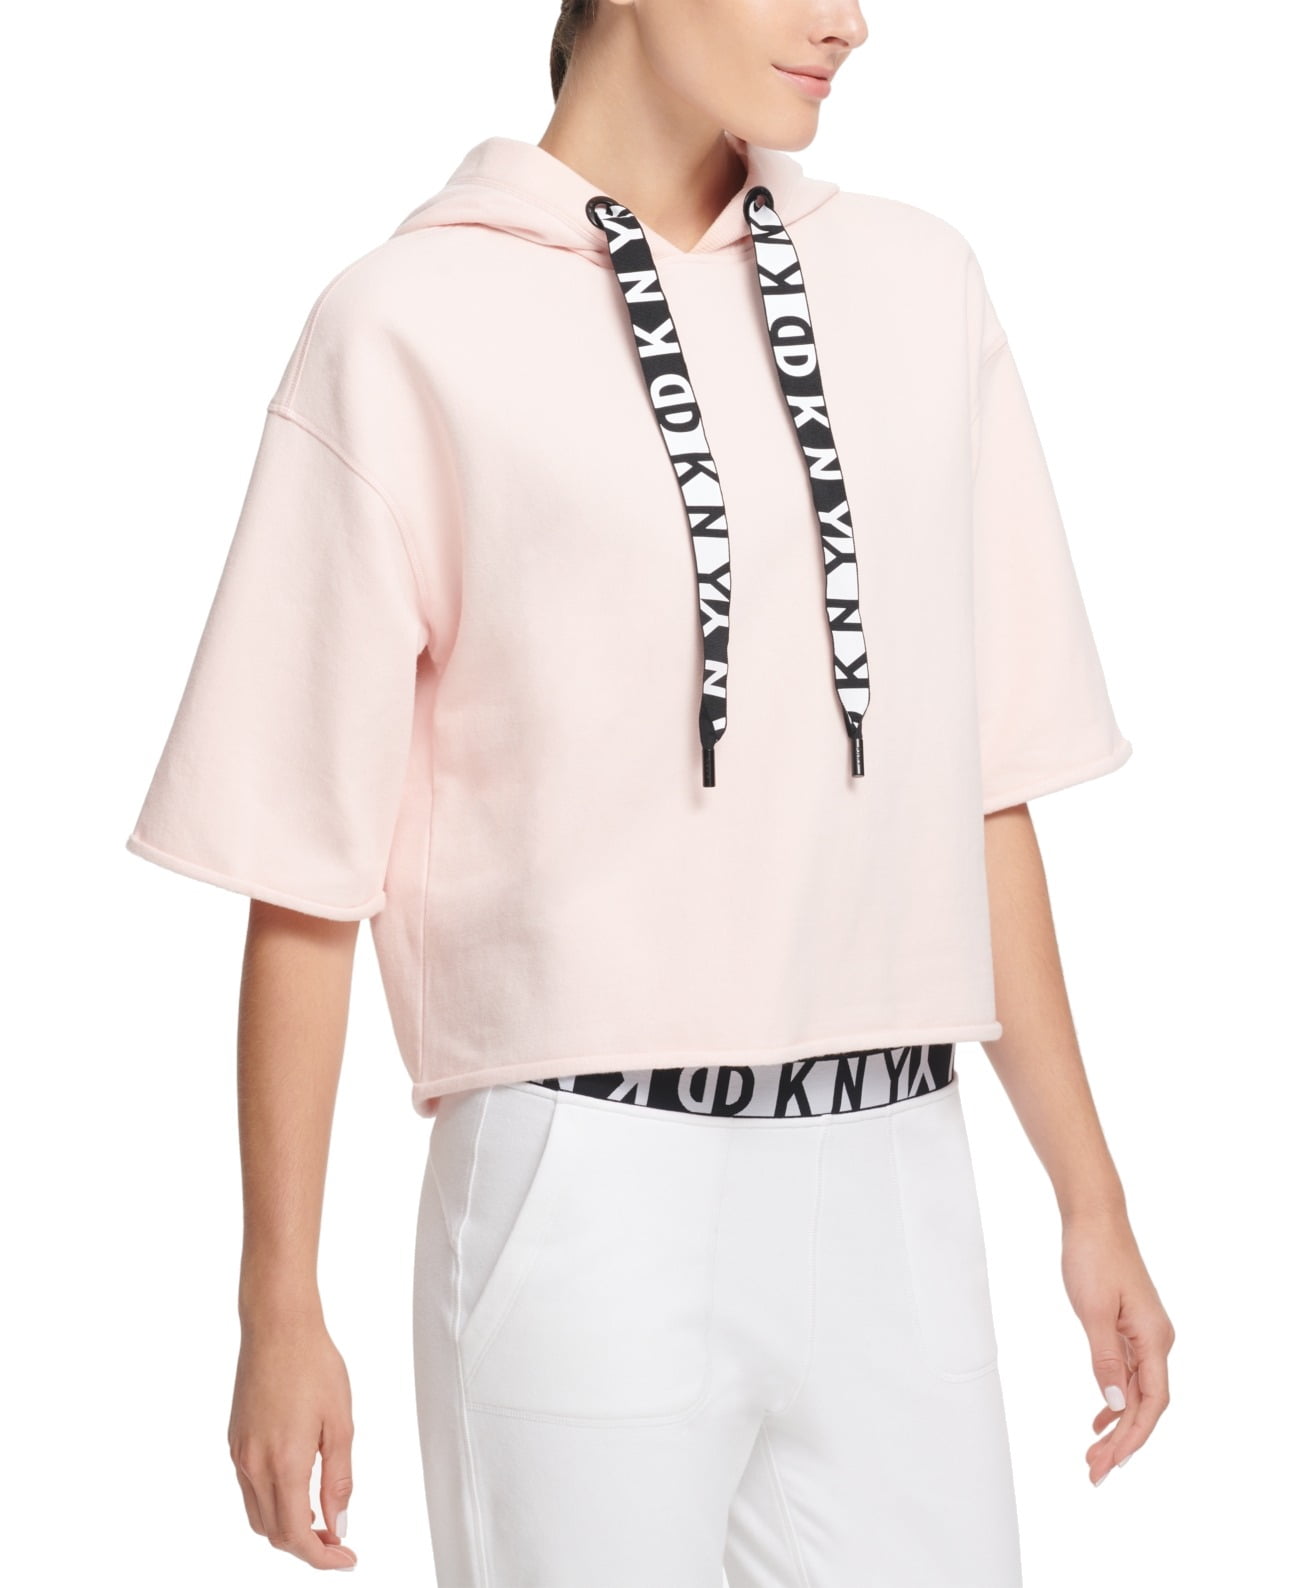 DKNY Hoodies & Sweatshirts - Womens Hoodie Small Cropped Short Sleeve ...